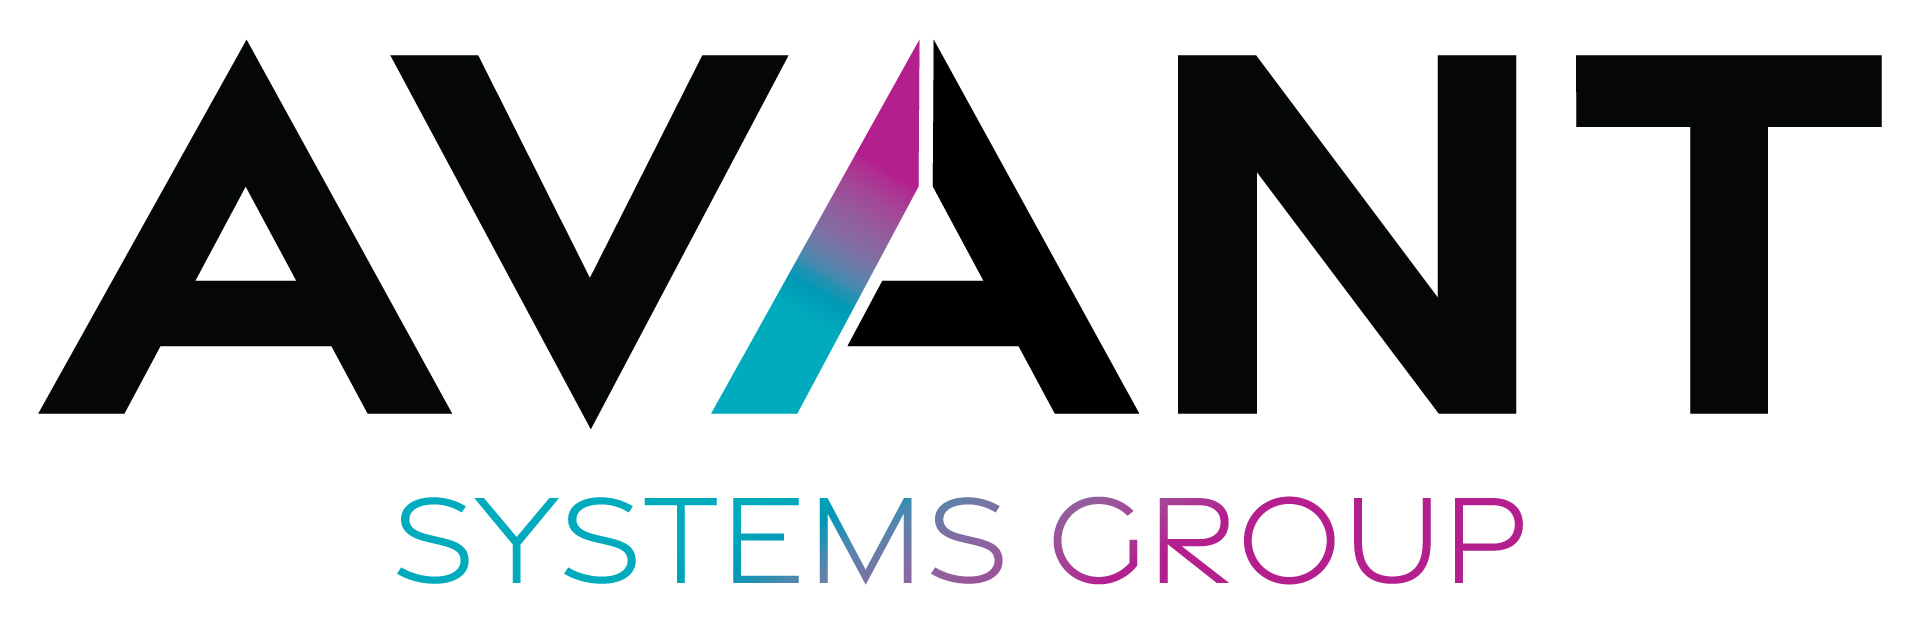 Avant systems group 로고